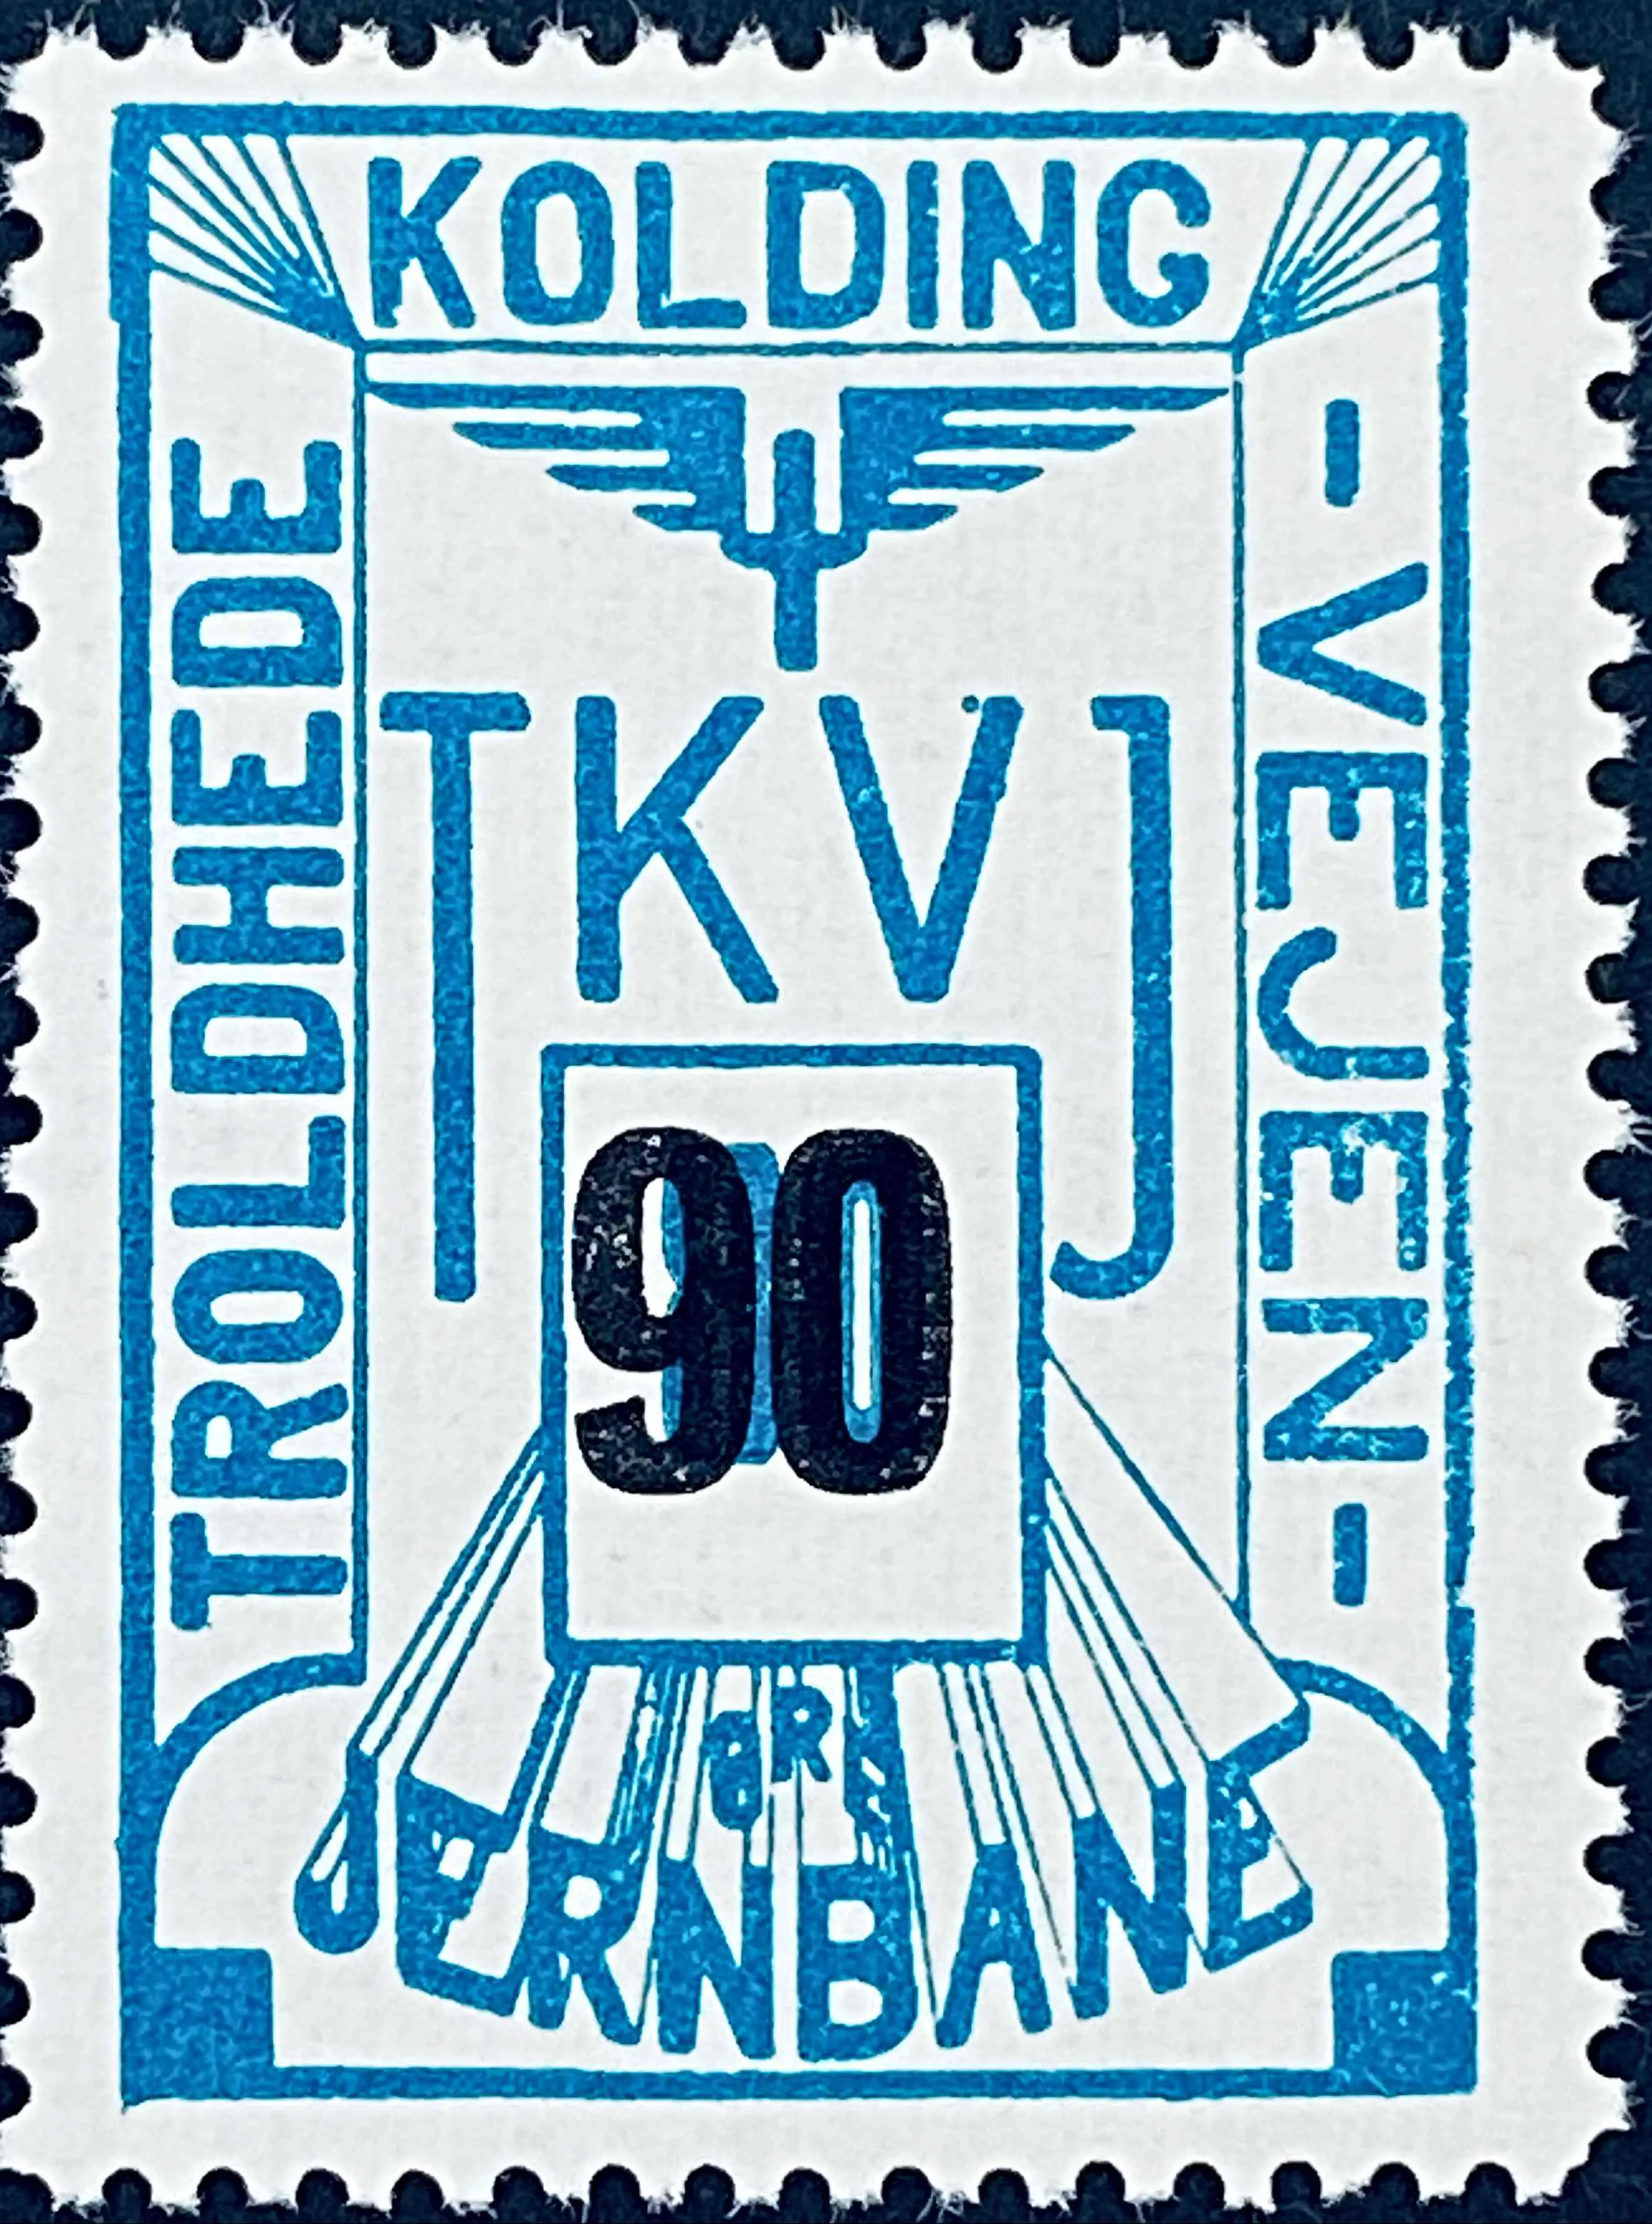 TKVJ 64 - Provisorium (overtryk) 90 Øre sort bogtryk på 80 Øre - Grønblå.